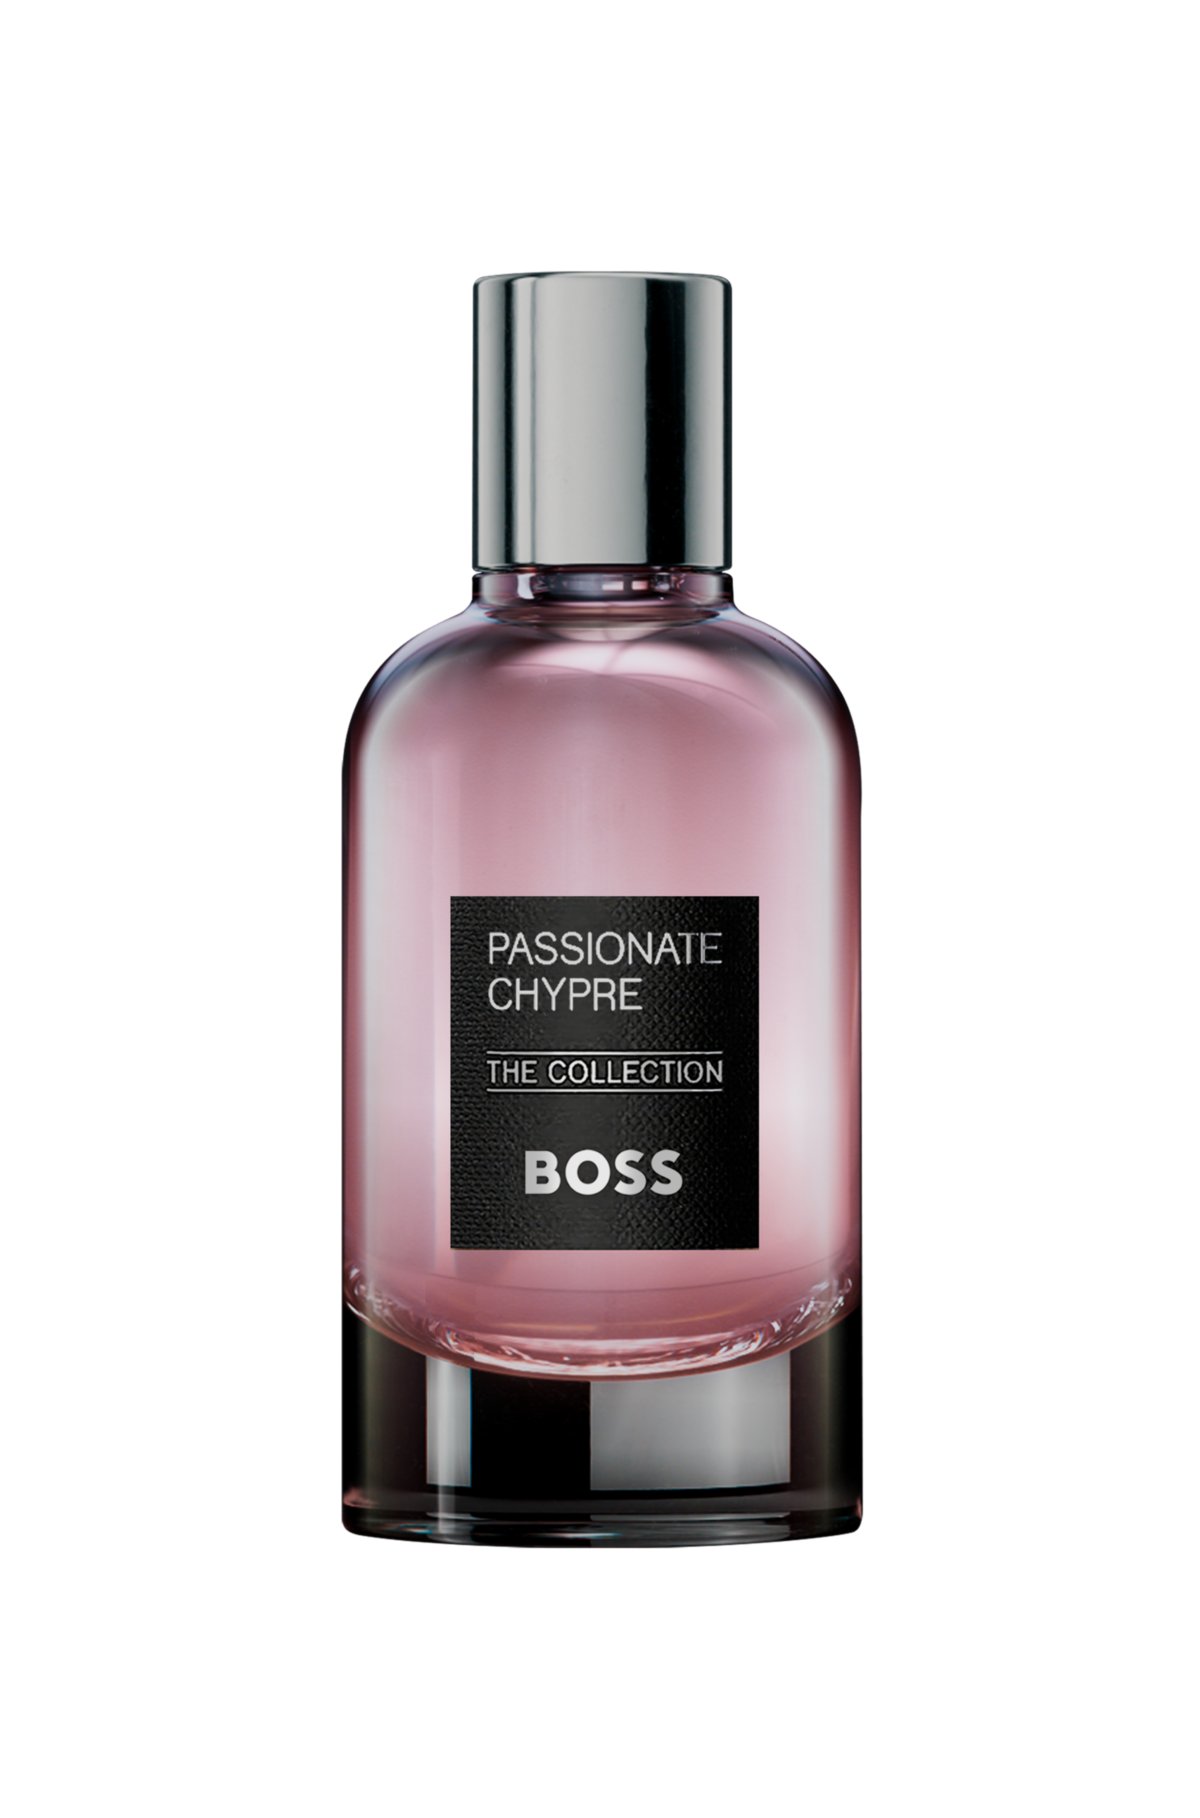 BOSS The Collection Passionate Chypre eau de parfum 100ml, Assorted-Pre-Pack